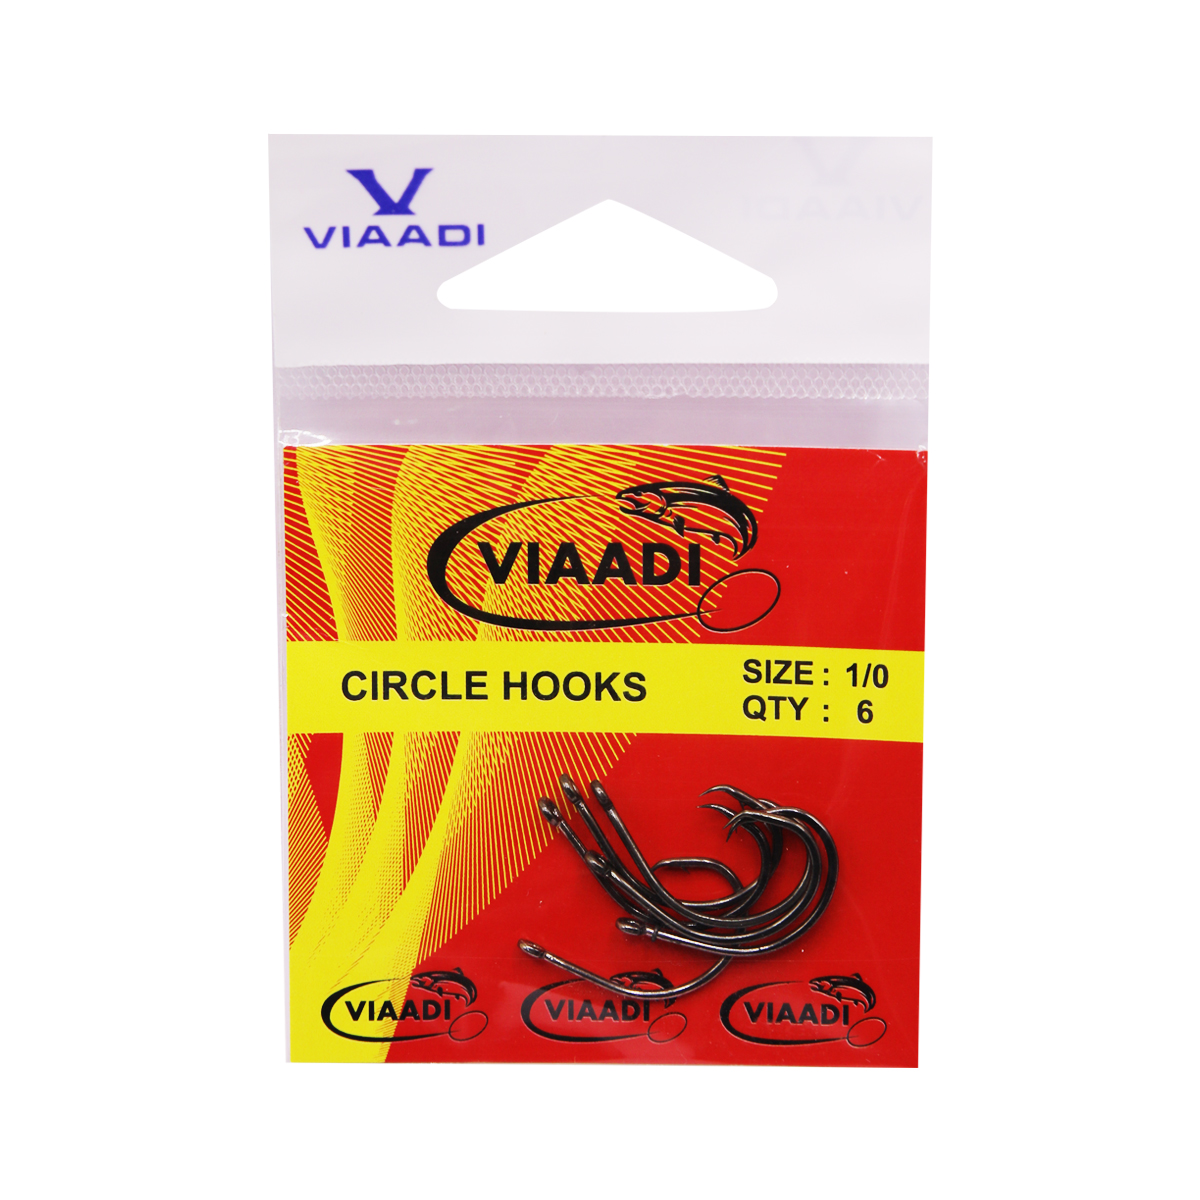 VIAADI CIRCLE HOOKS 1/0 – Viaadi